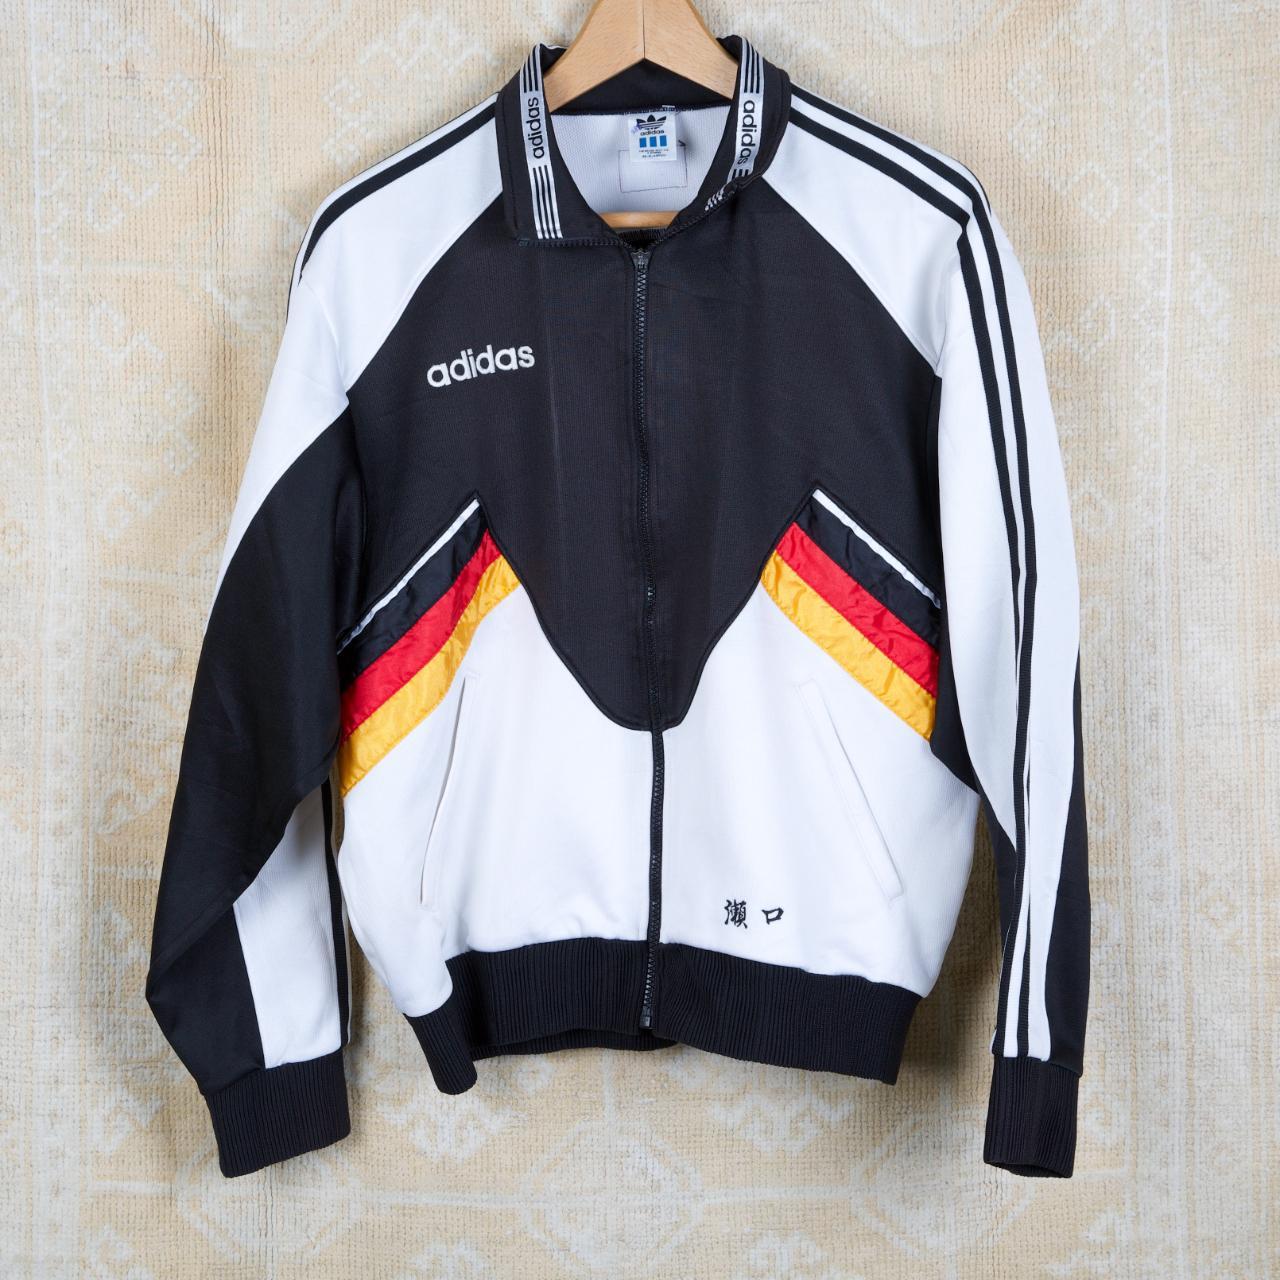 Trouw Sluiting Tien jaar Vintage 90s Adidas Football Training Jacket Custom... - Depop